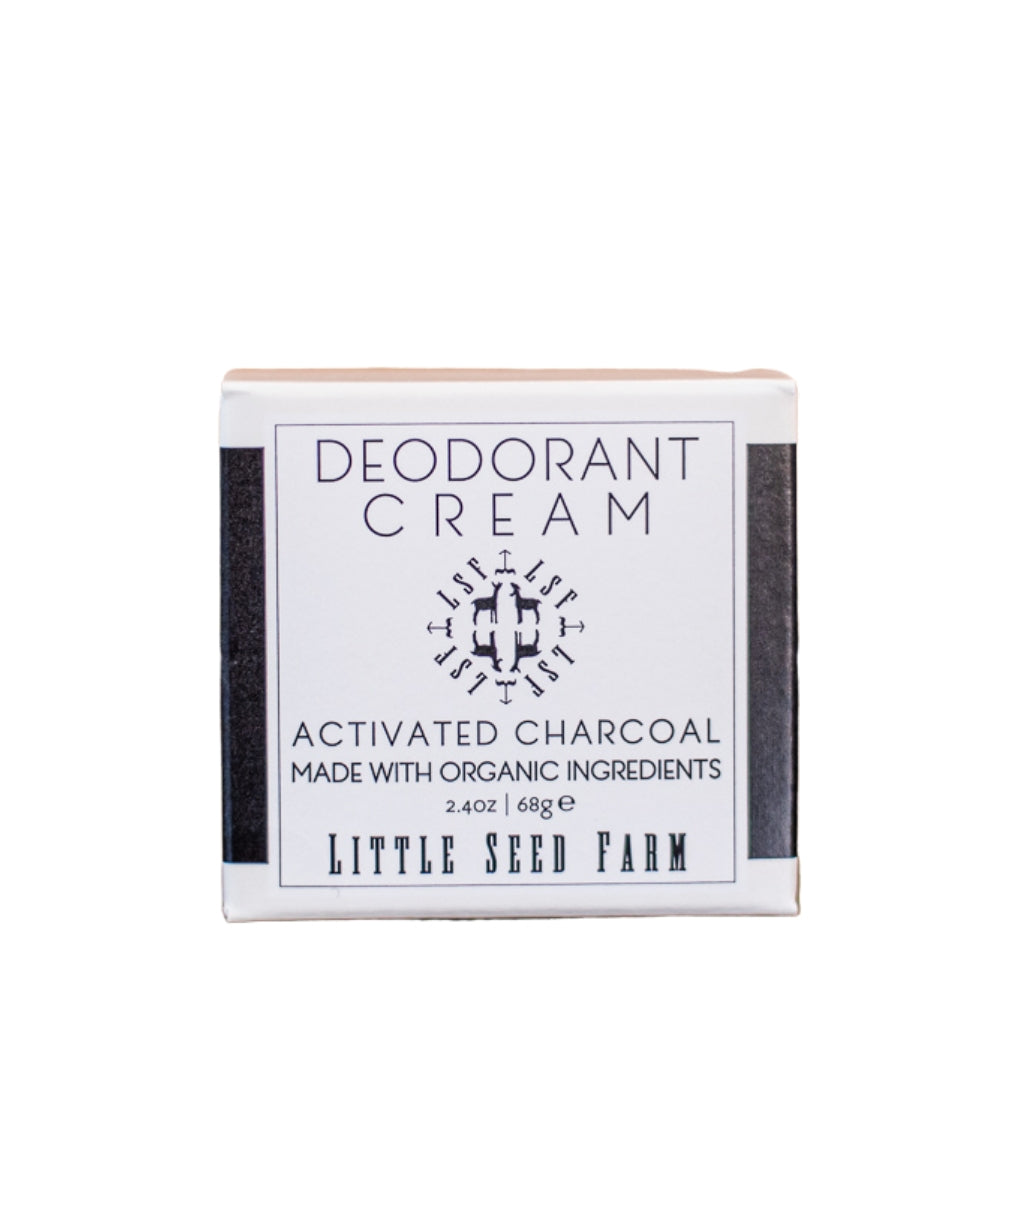 Activated Charcoal Deodorant Cream